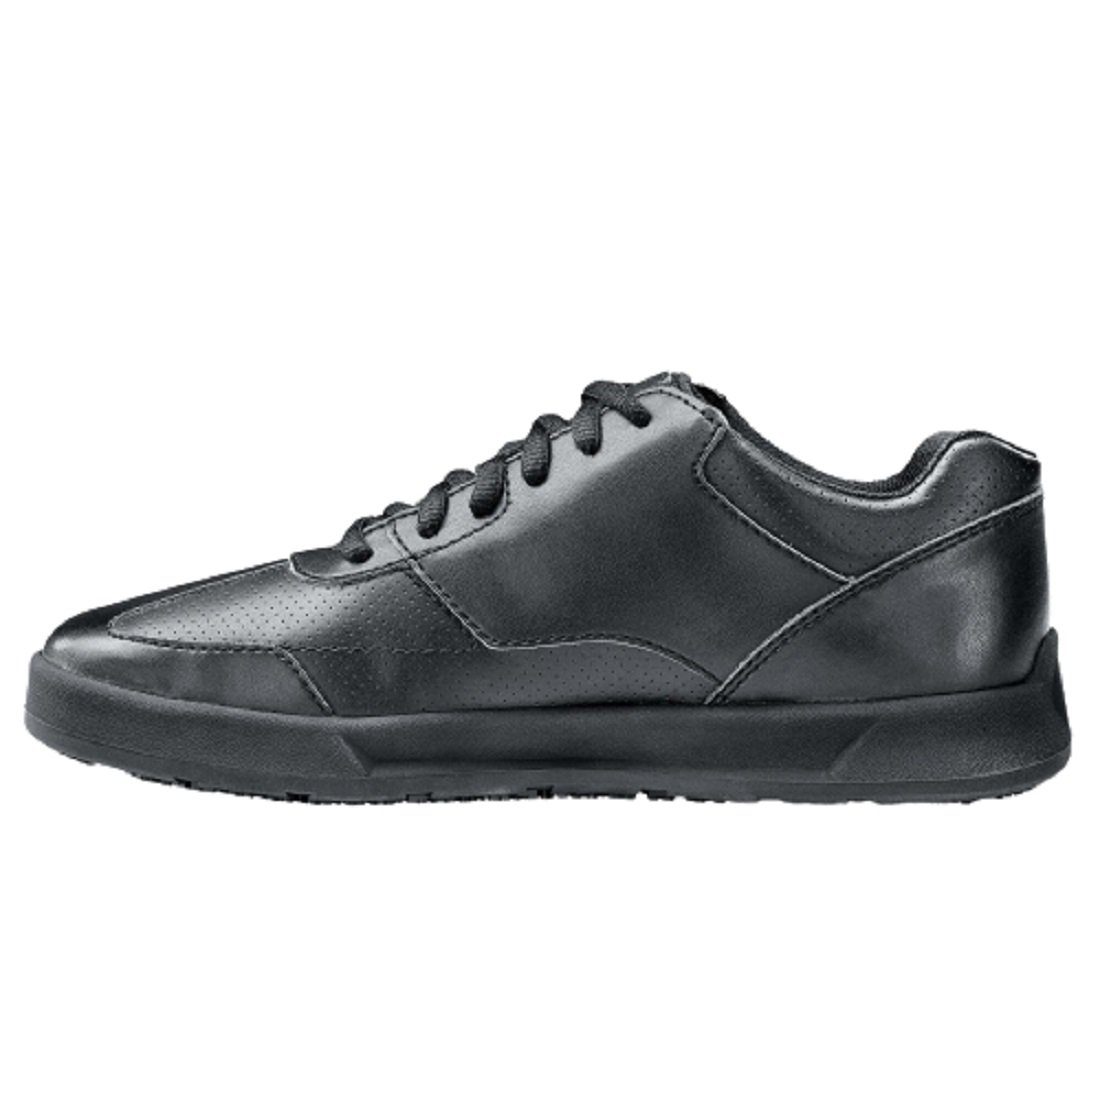 LIBERTY SFC-Laufsohle schwarz For wasserabweisend, Sicherheitsschuh WOMENS Crews Shoes